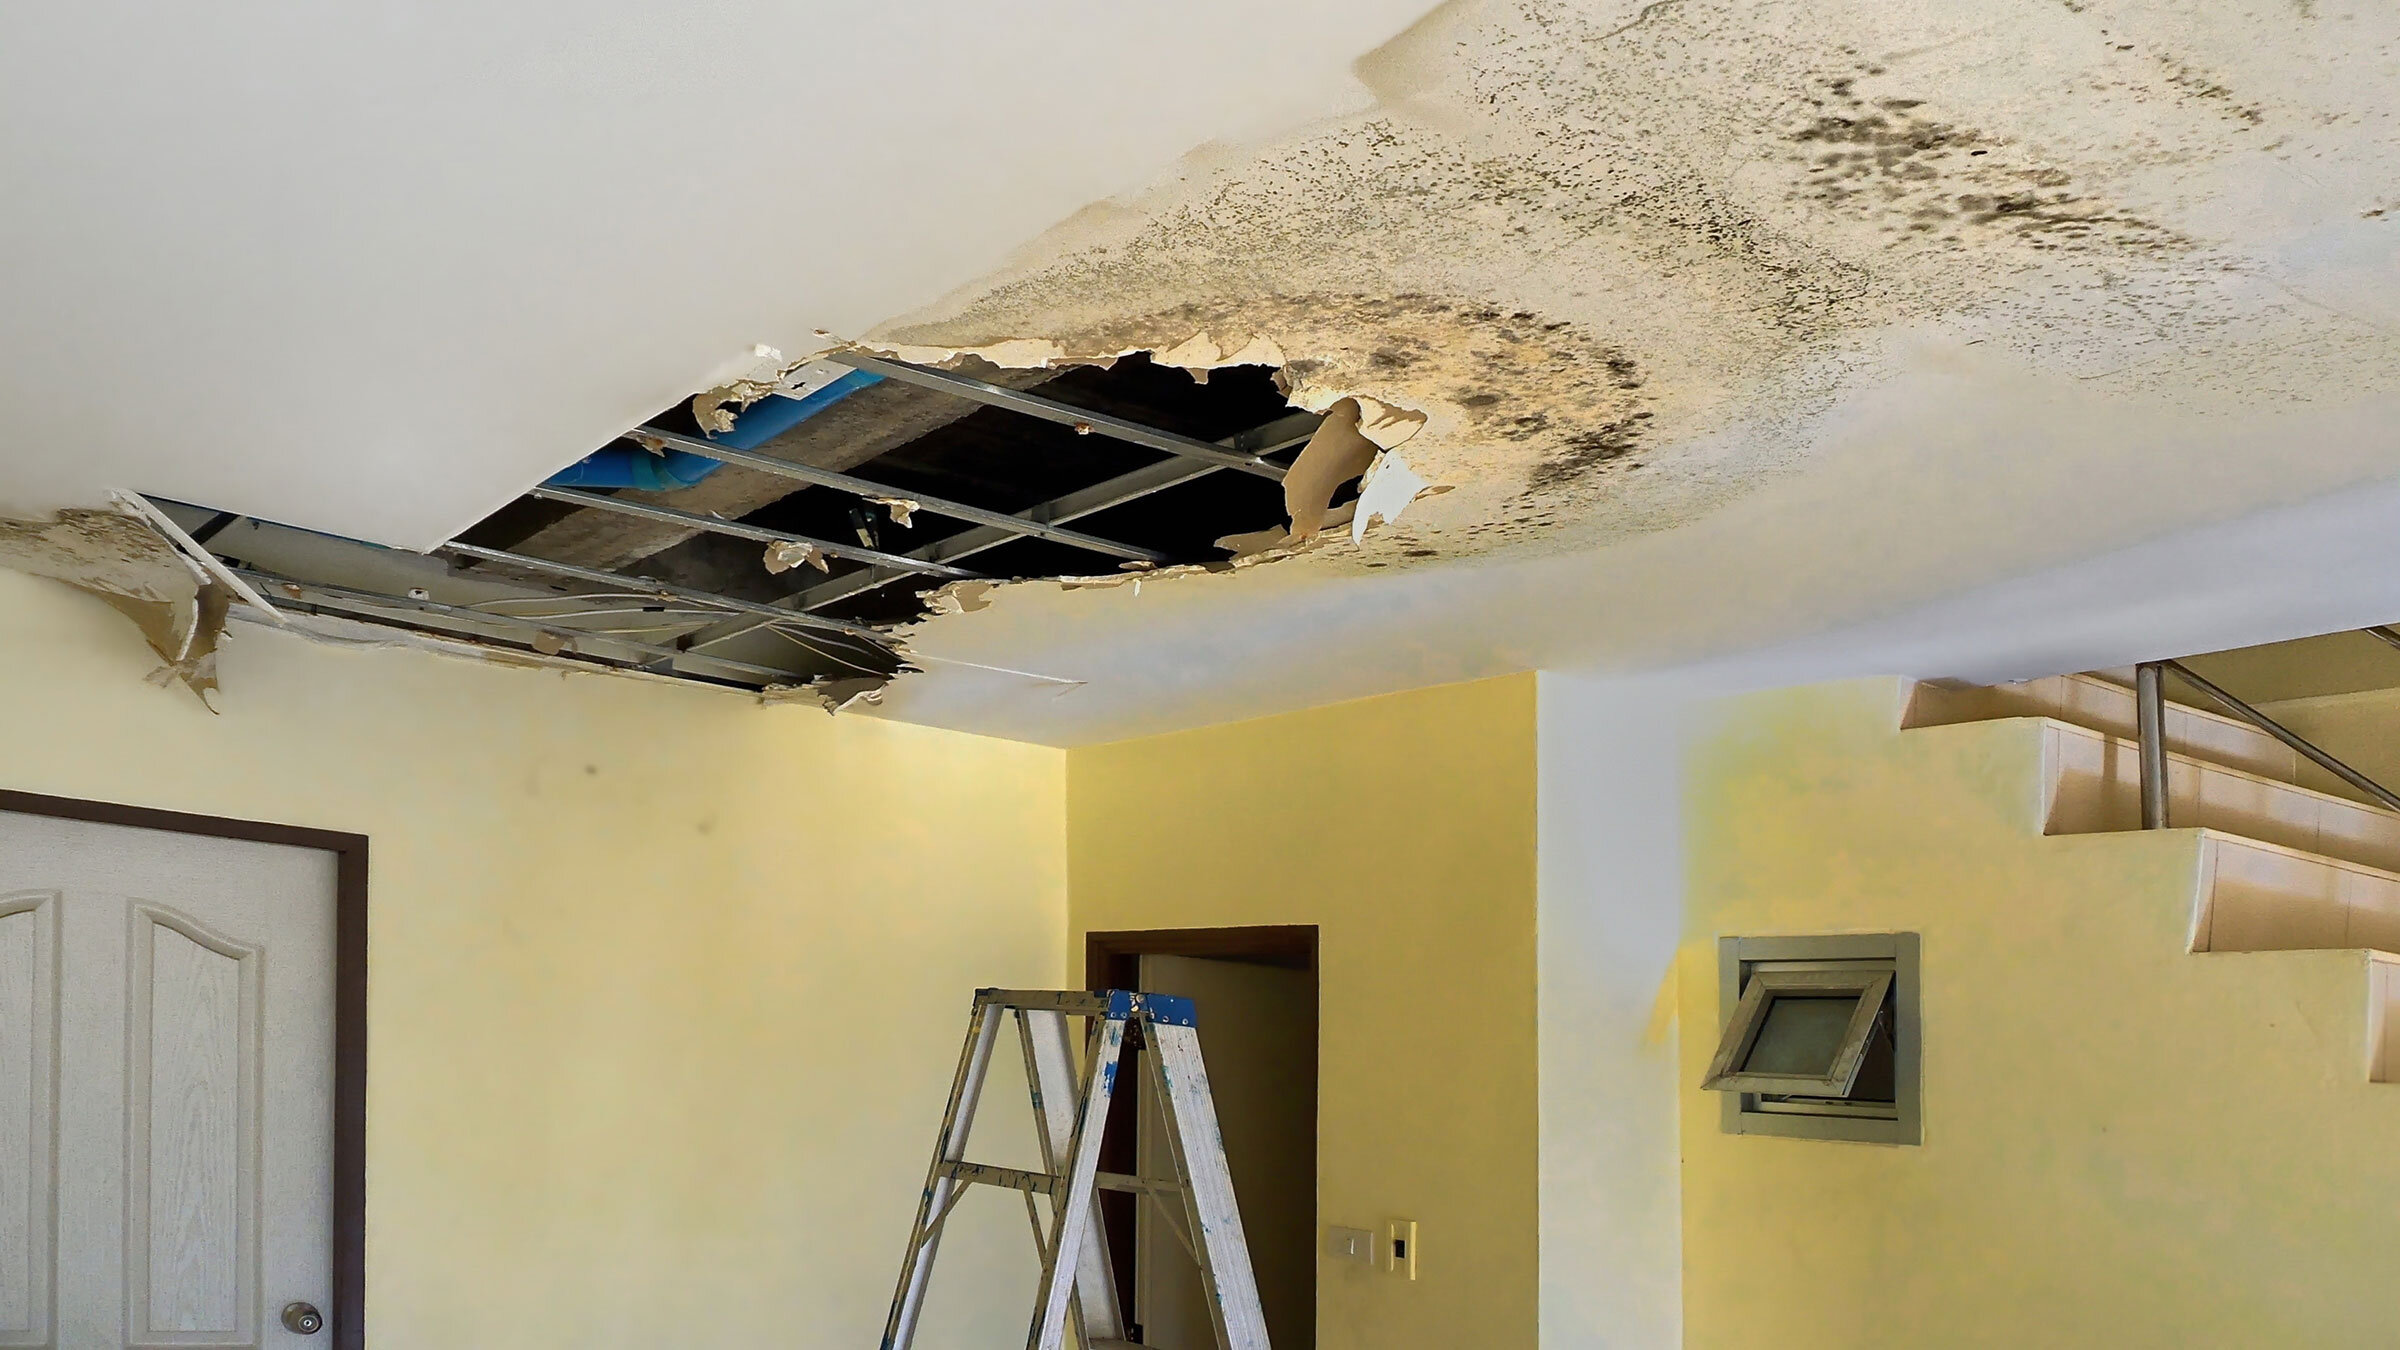  Termite Repair Contractors | Water Damage Repairs Mobile AL